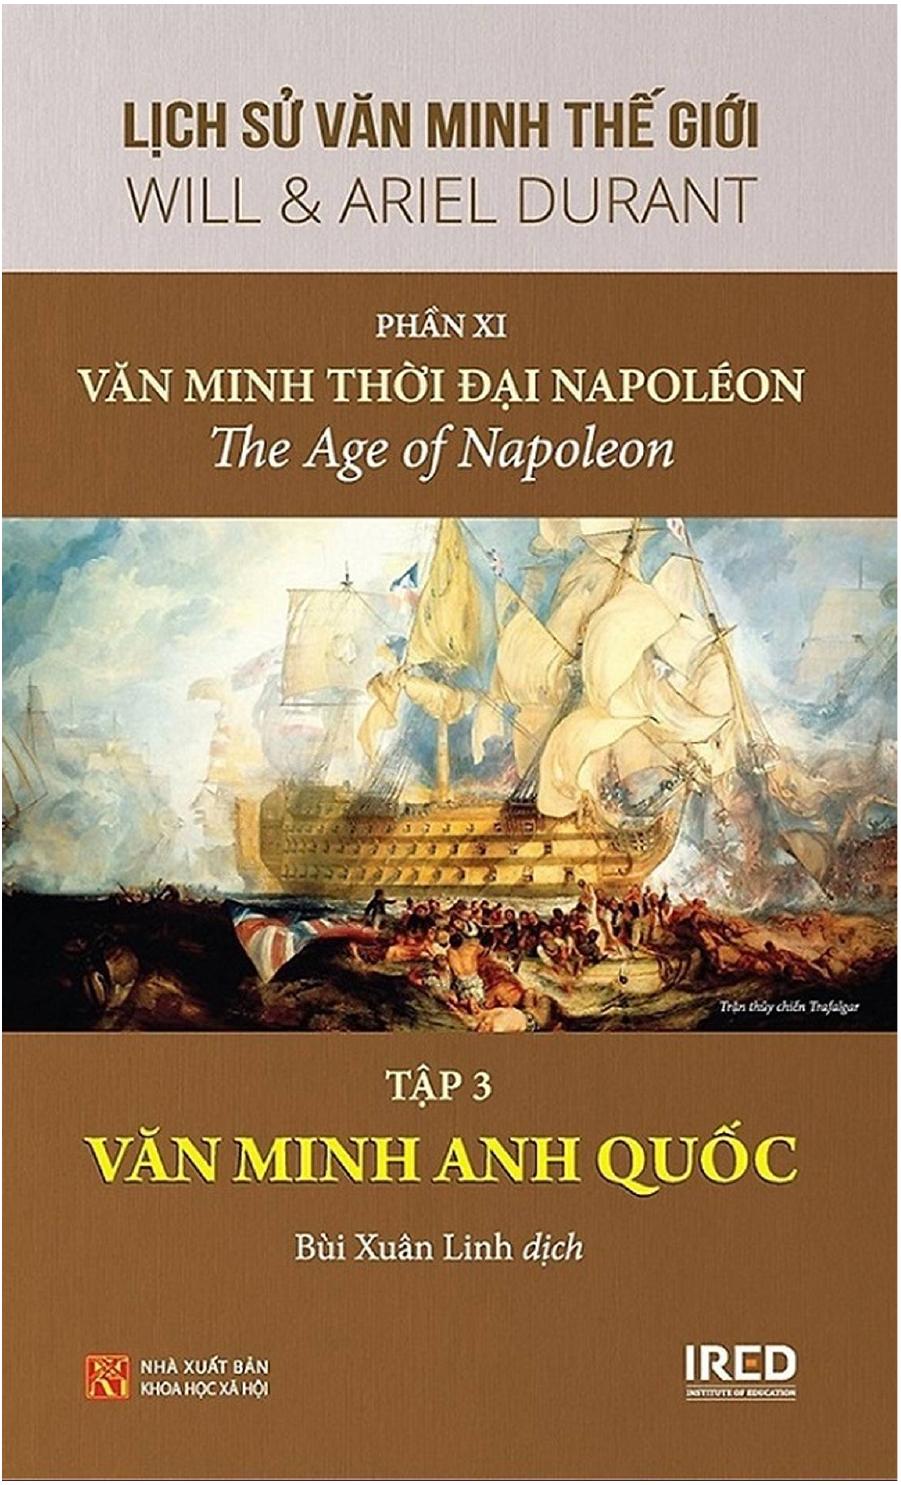 Lịch Sử Văn Minh Thế Giới Phần XI: Văn Minh Thời Đại Napoléon (tập 3)